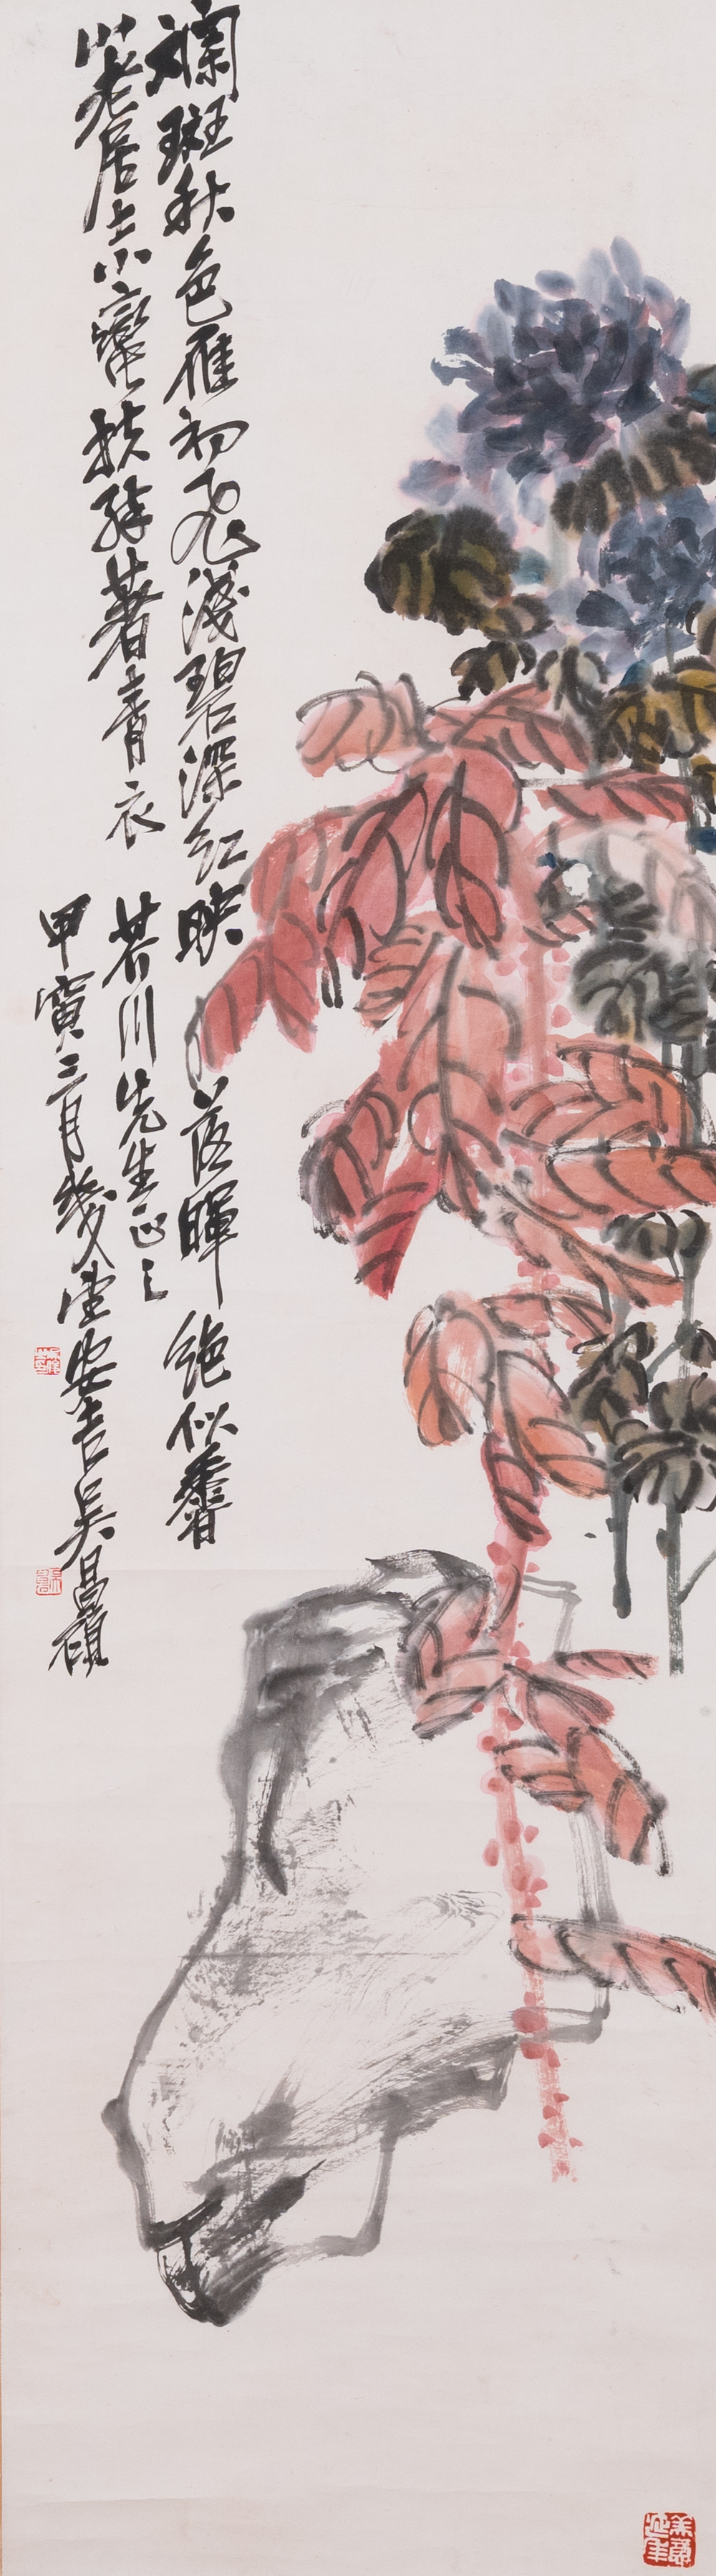 Navolger van Wu Changshuo 吳昌碩 (1844-1927): 'Herfst', inkt en kleur op papier, gedateerd 1914